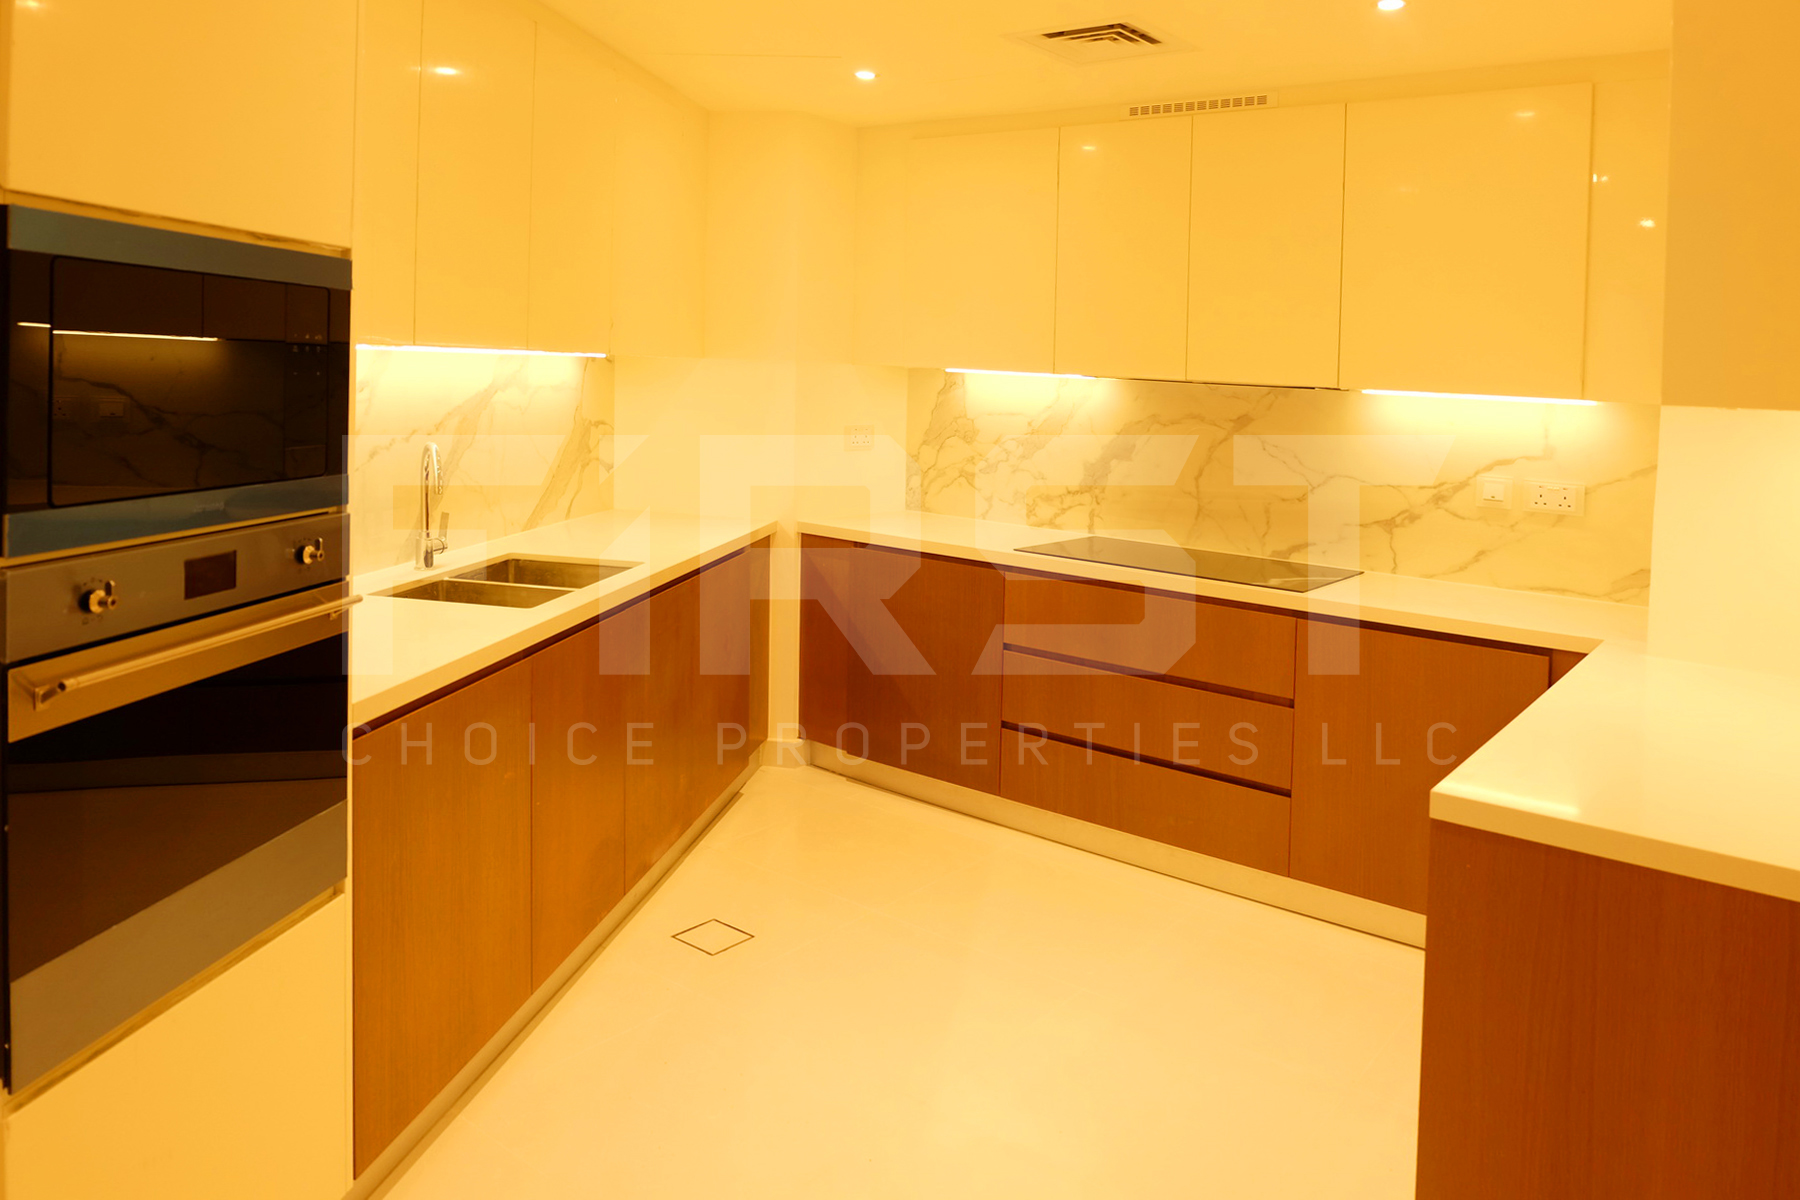 2 Bedroom Apartment in Mamsha Al Saadiyat Abu Dhabi U.A.E. (81).jpg